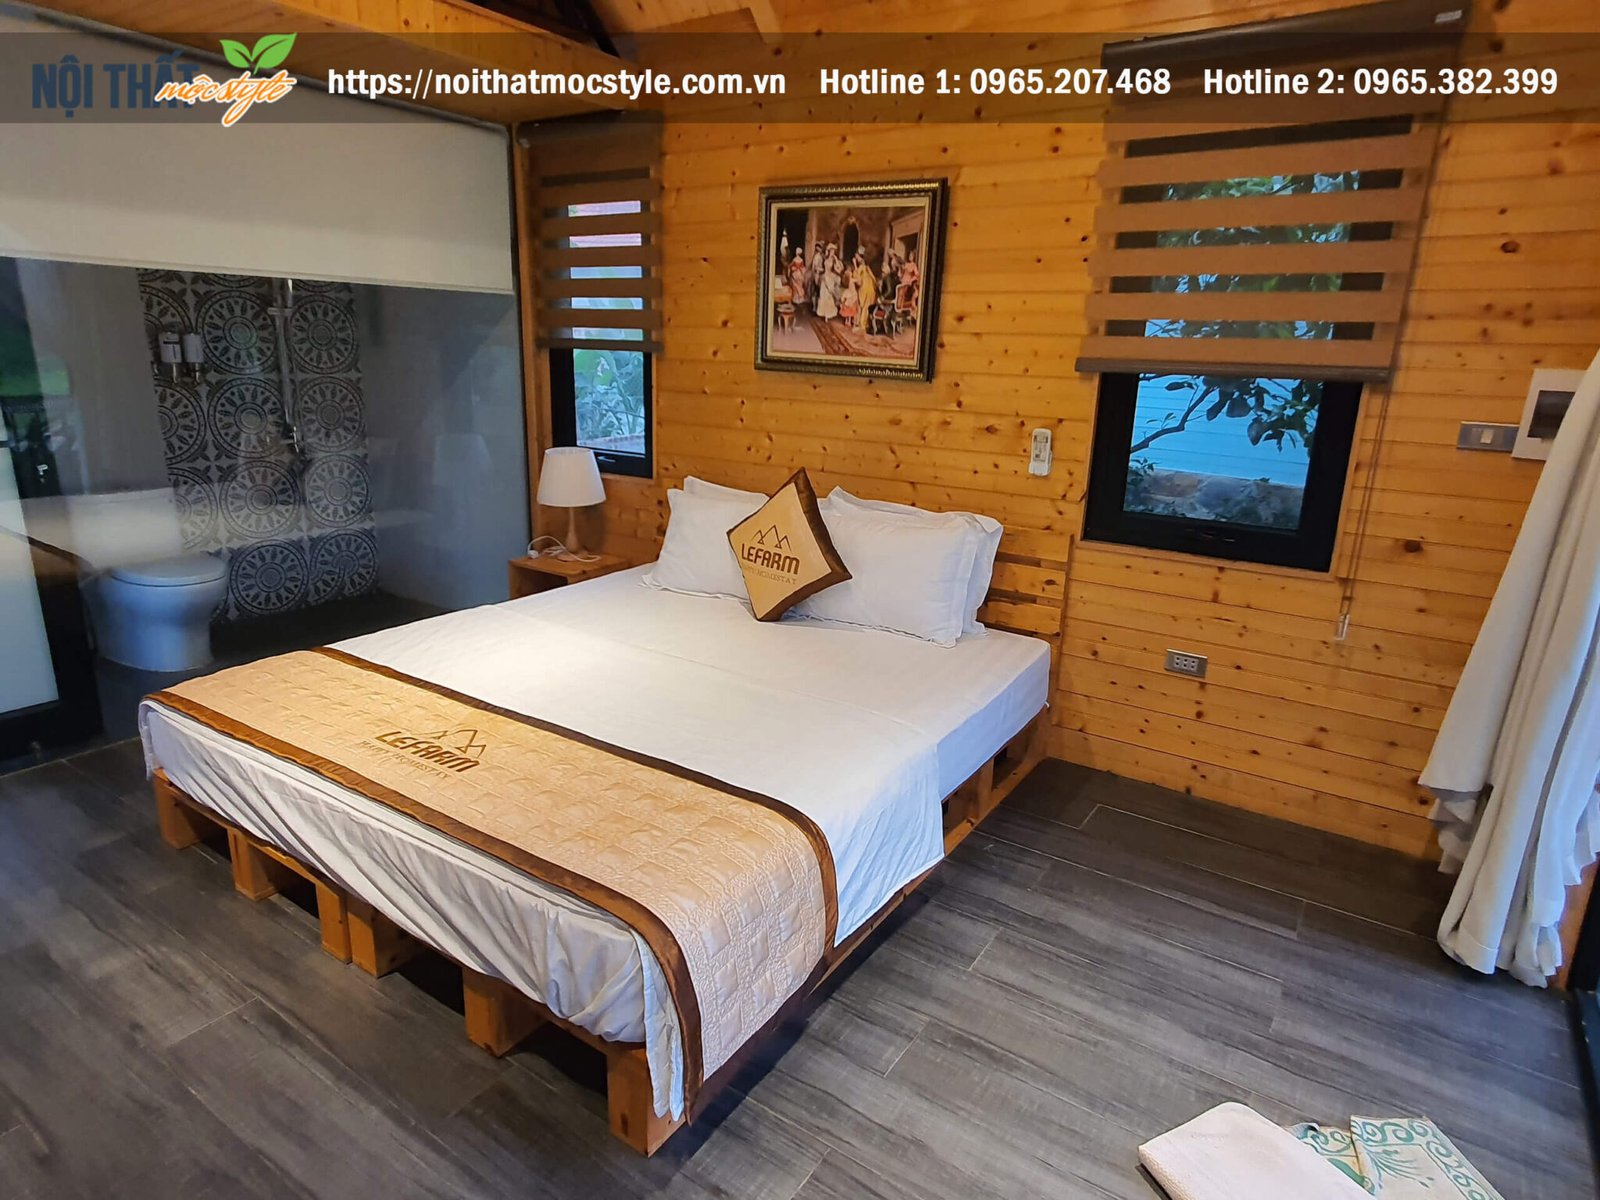 Không gian phòng ngủ chuẩn gu với chất liệu gỗ tự nhiên mang đến cho ta cảm giác ấm áp và thư thái